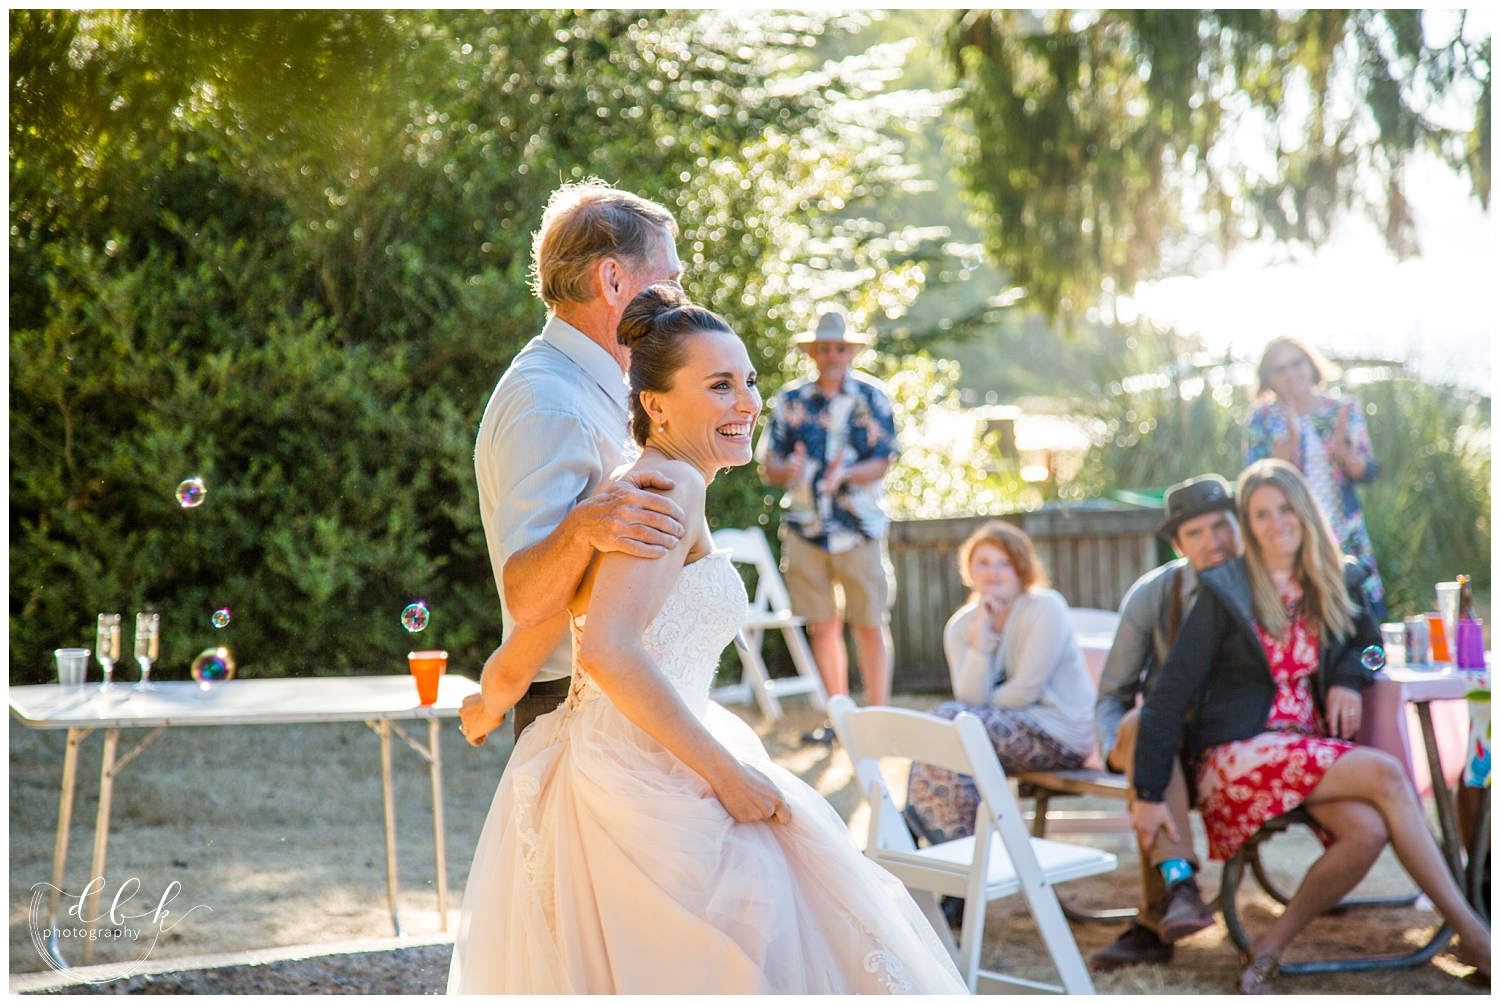 a happy bride at her Anacortes wedding reception at Washington Park picnic area